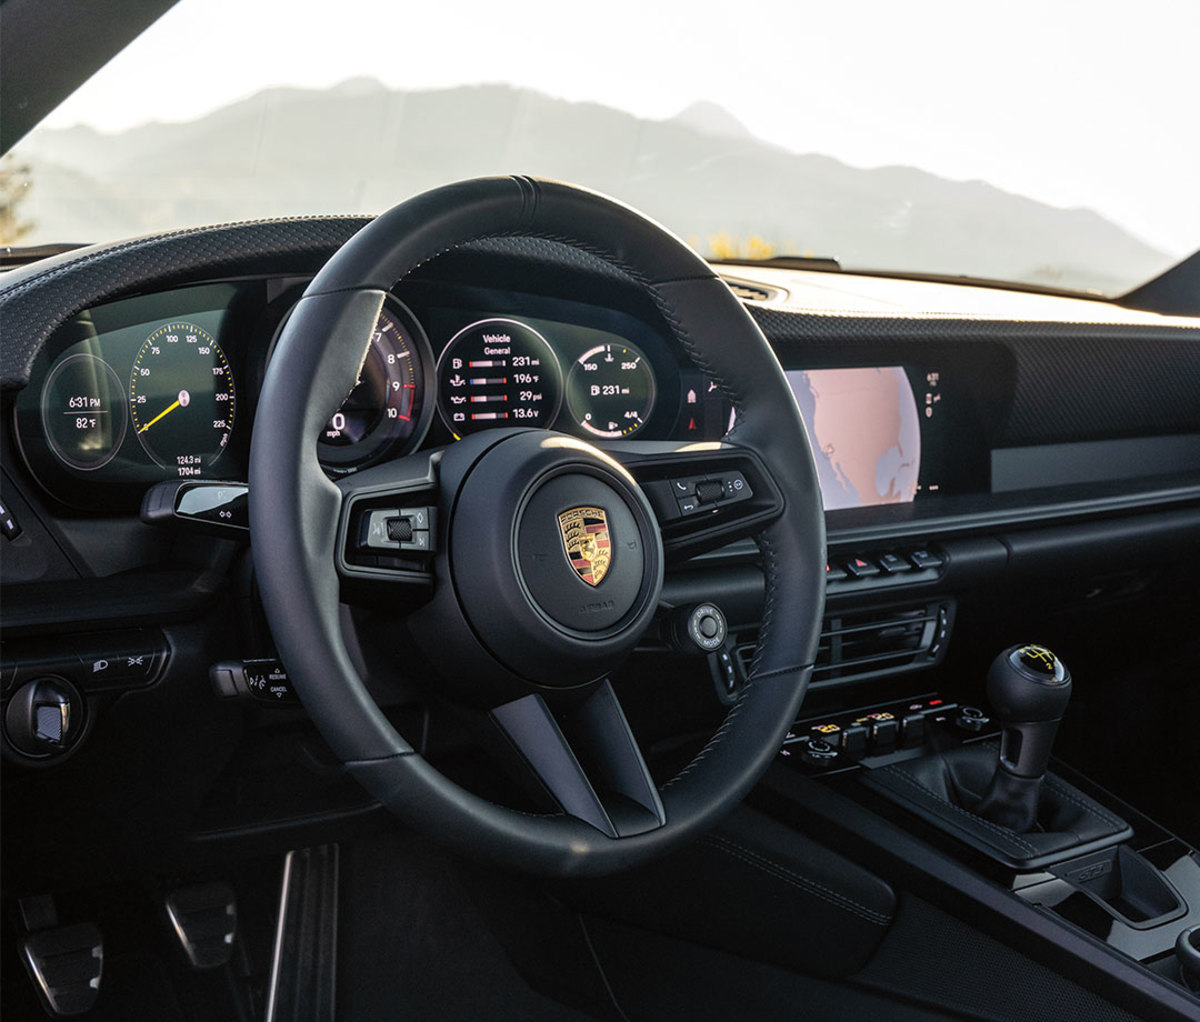 Interior dashboard of Porsche